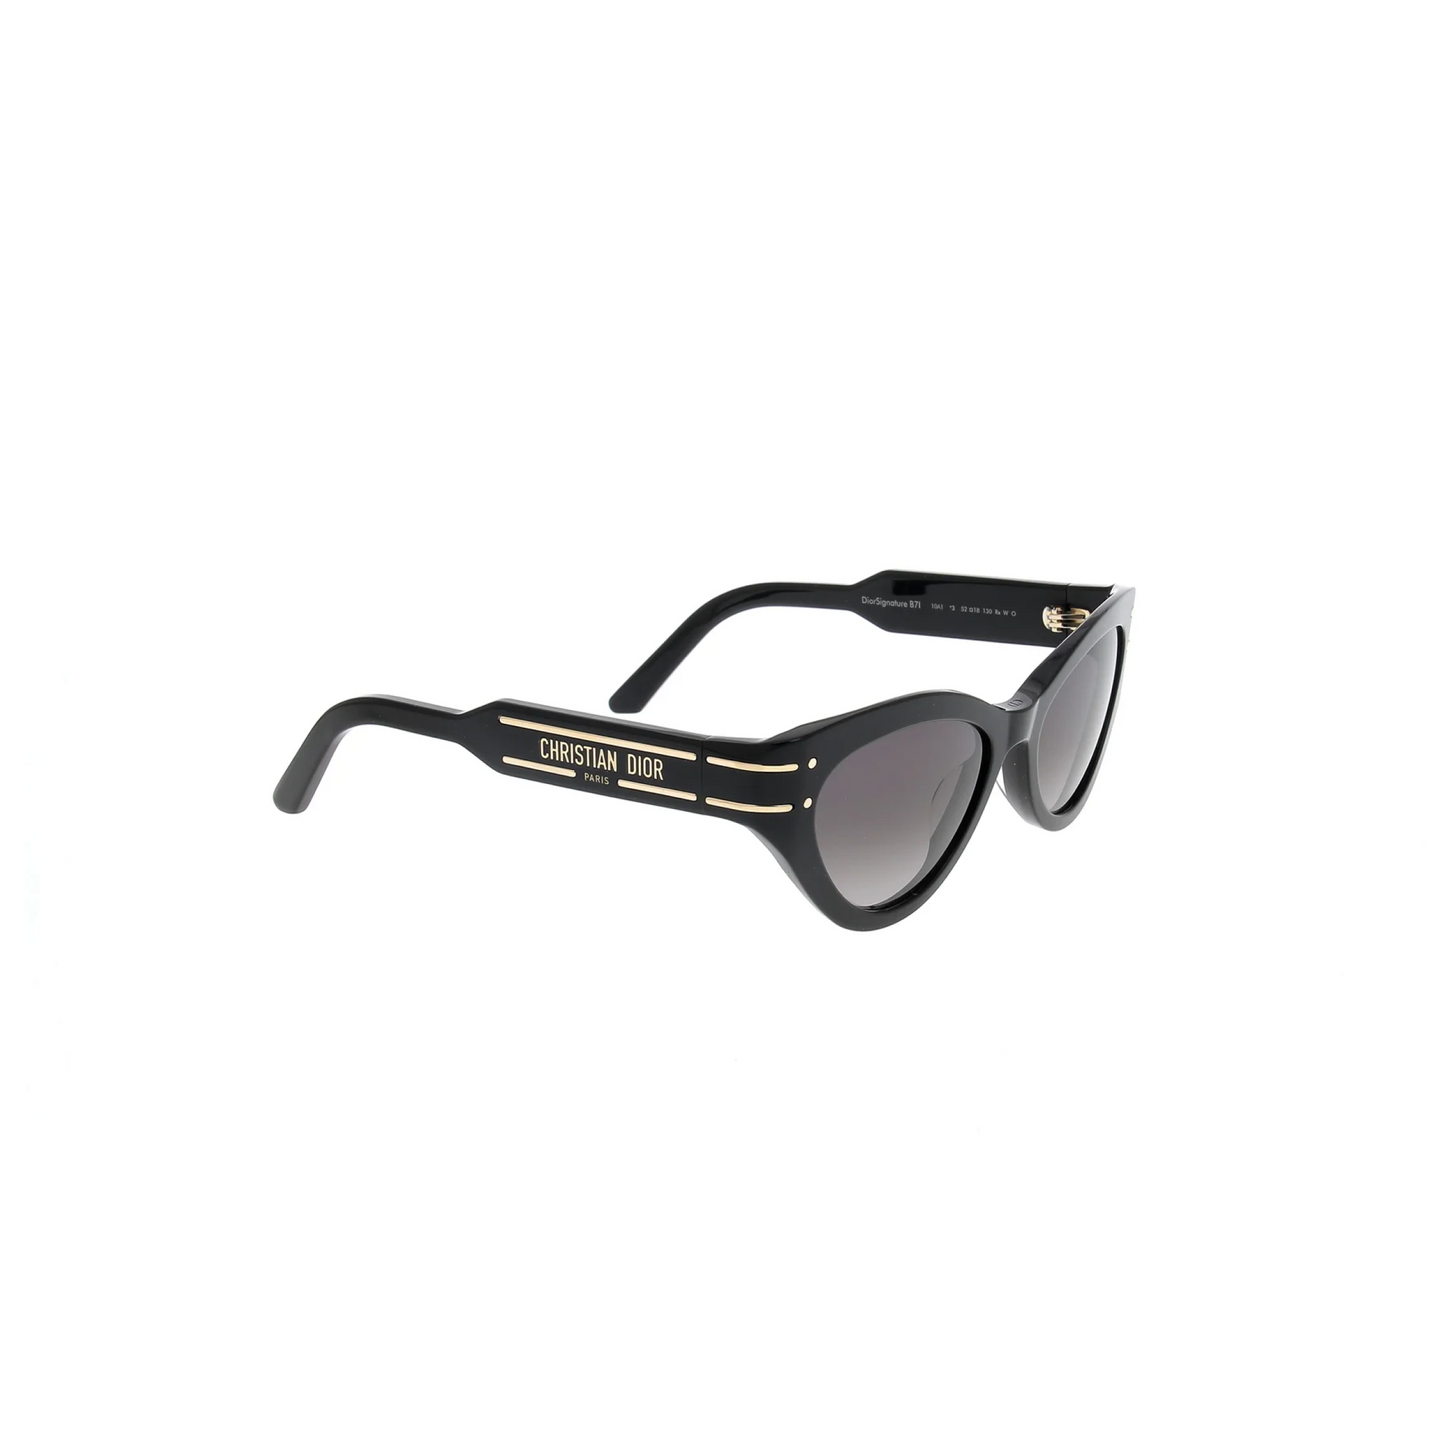 DiorSignature B7I 10A152 Sunglasses in Black